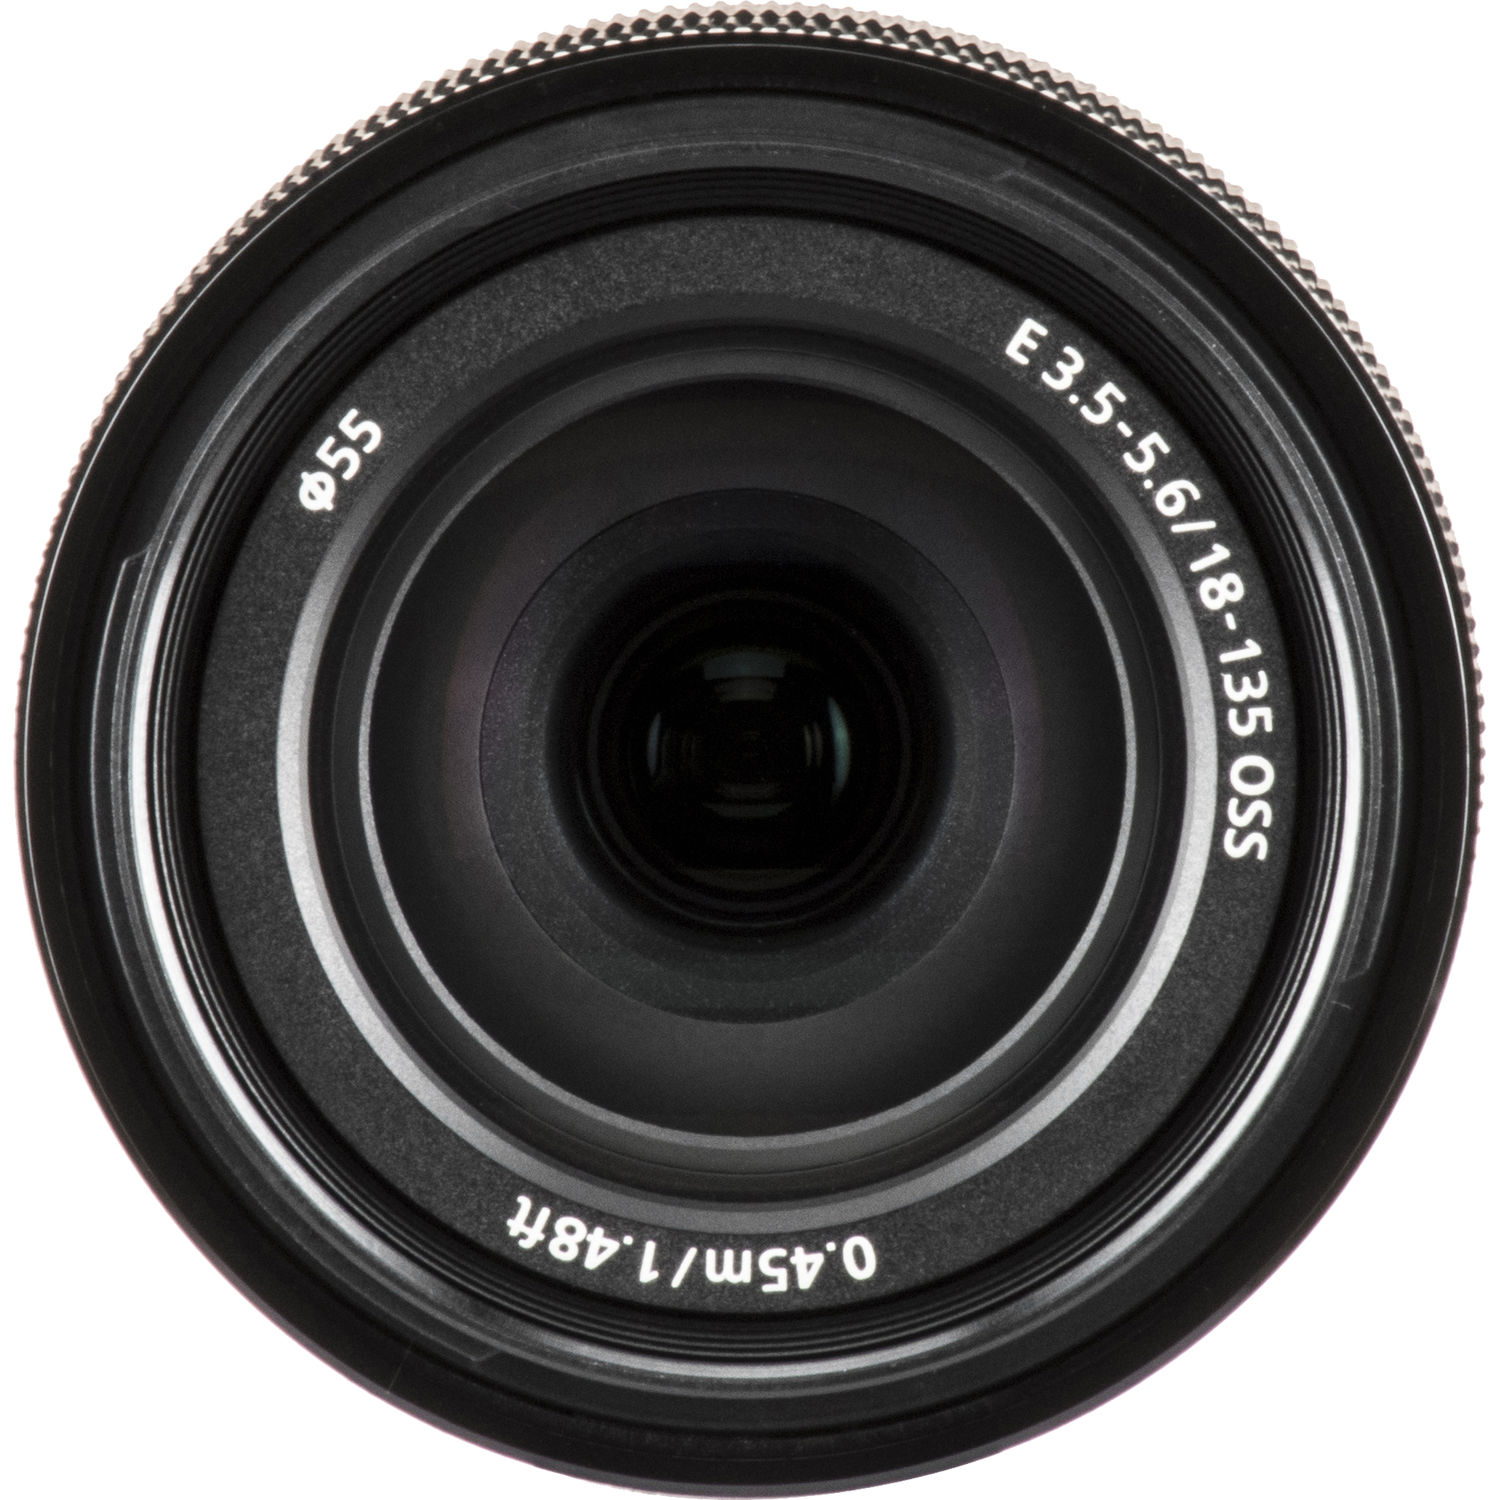 لنز سونی E 18-135mm f/3.5-5.6 OSS